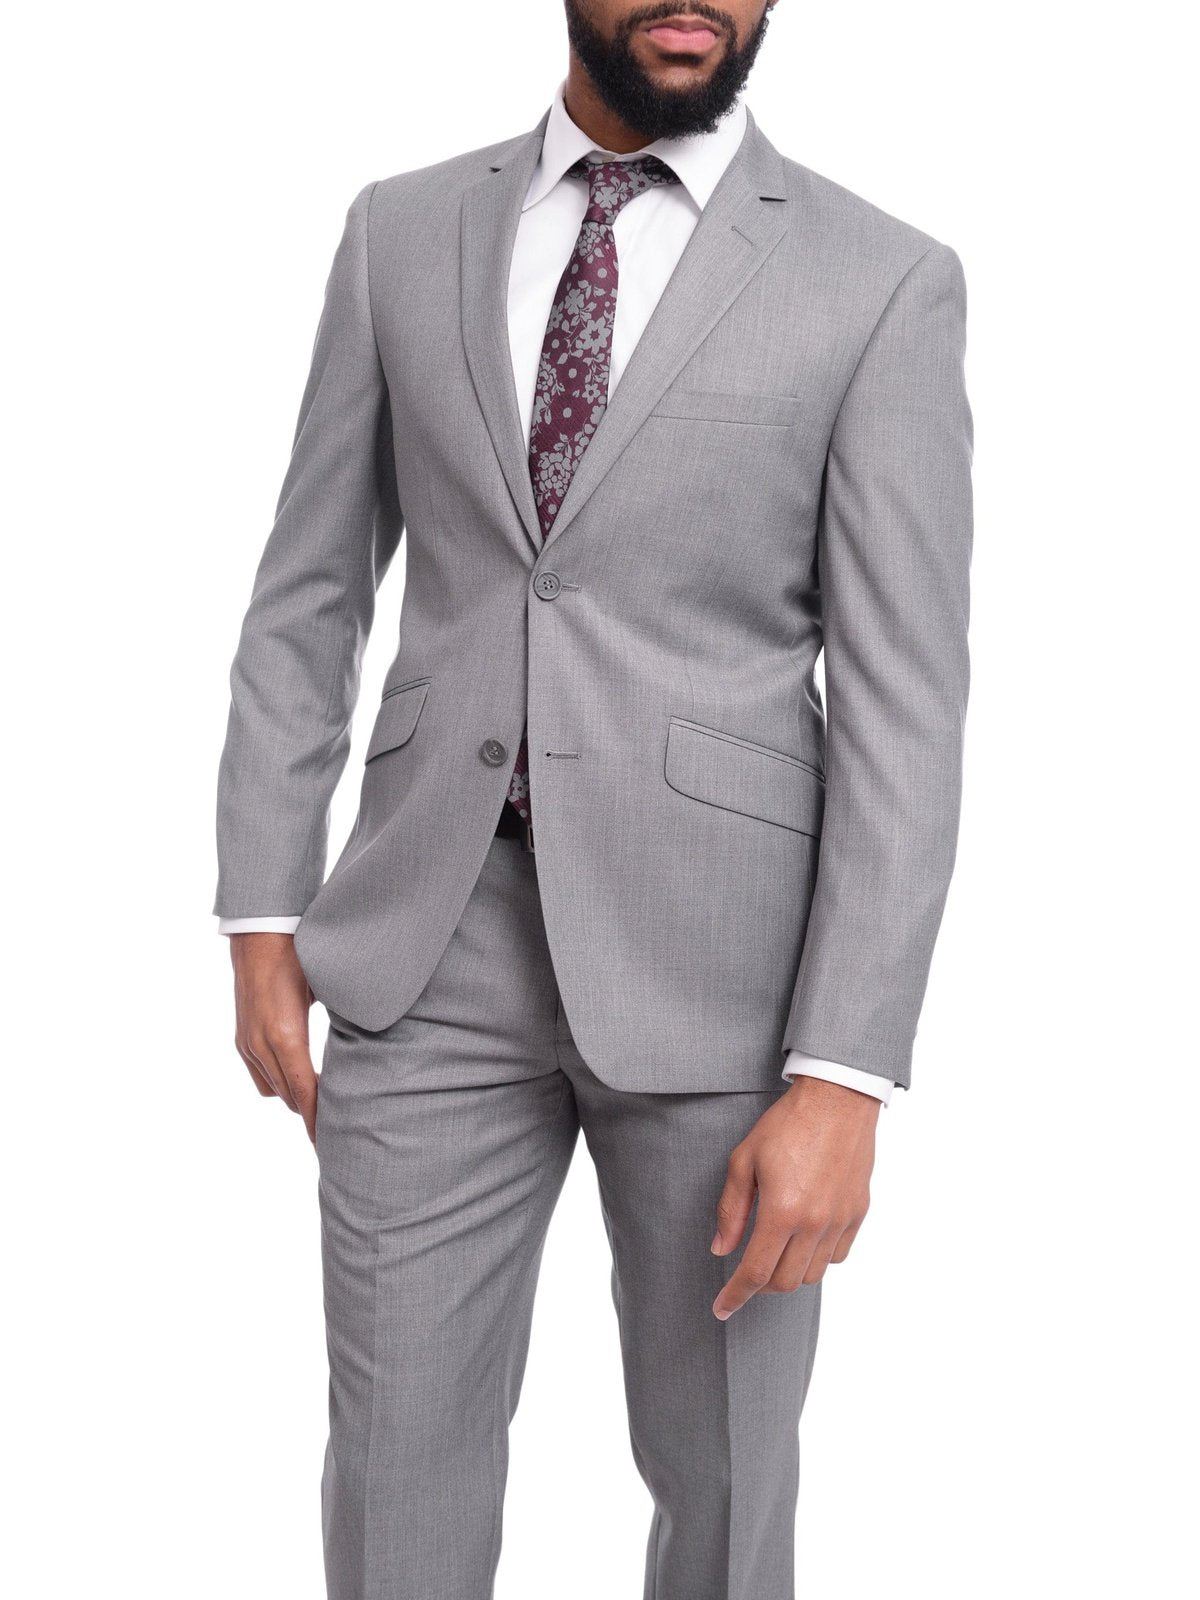 Raphael TWO PIECE SUITS Raphael Men's Slim Fit Light Gray Wool-touch Two Button 2 Piece Suit